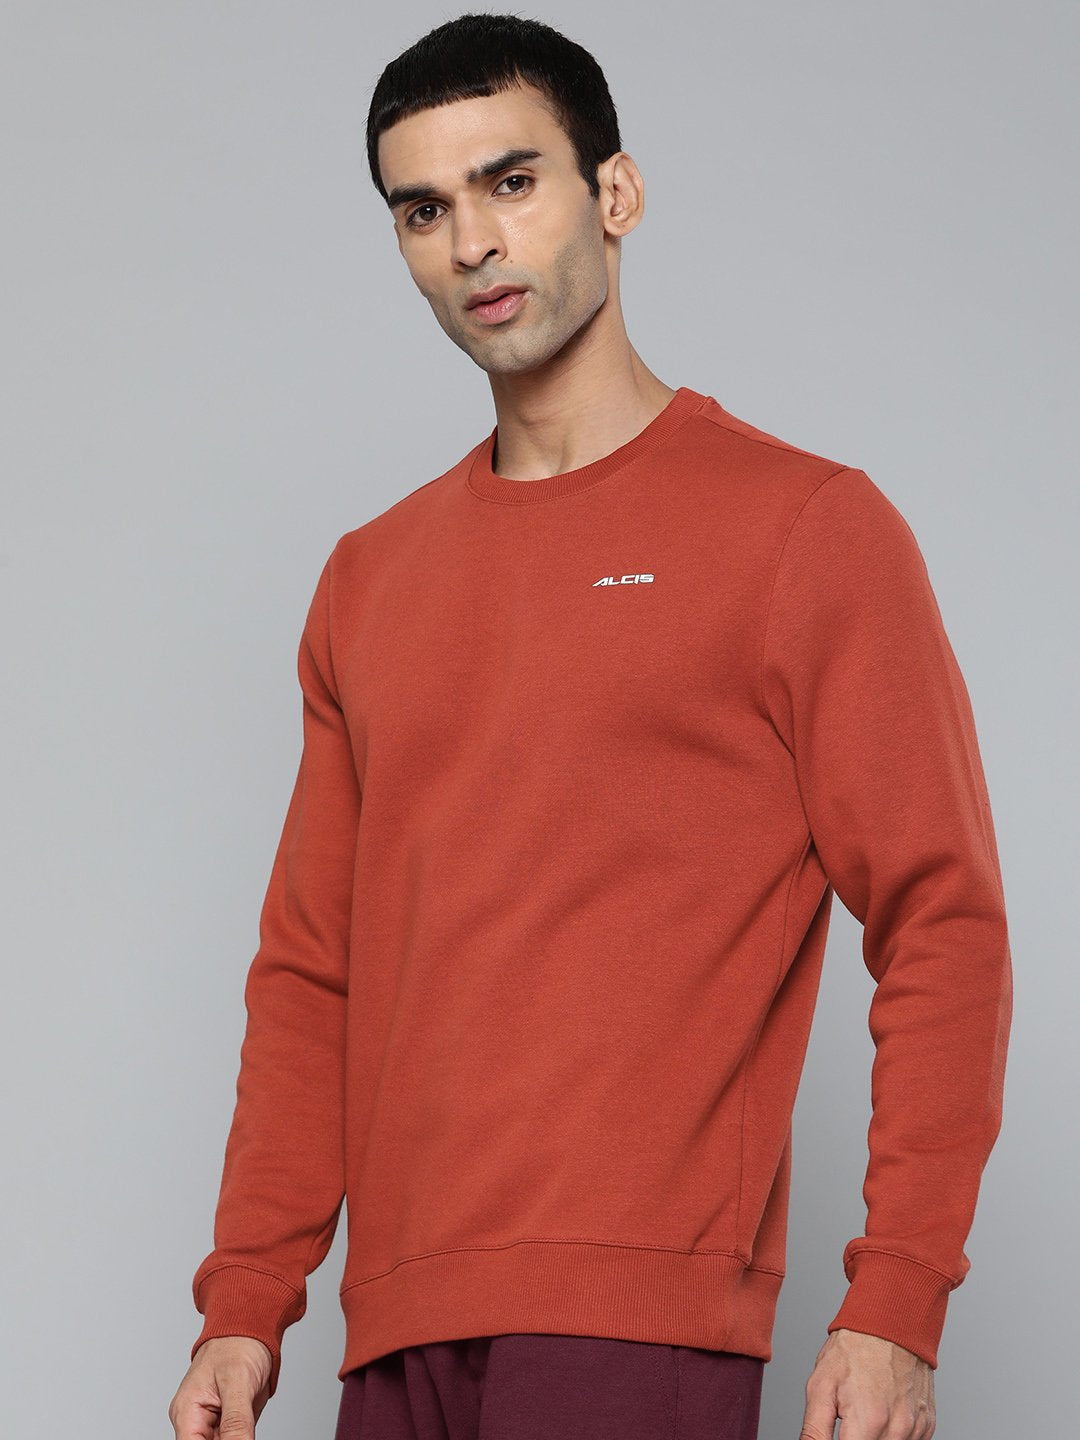 Alcis Men Solid Rust Sweatshirts